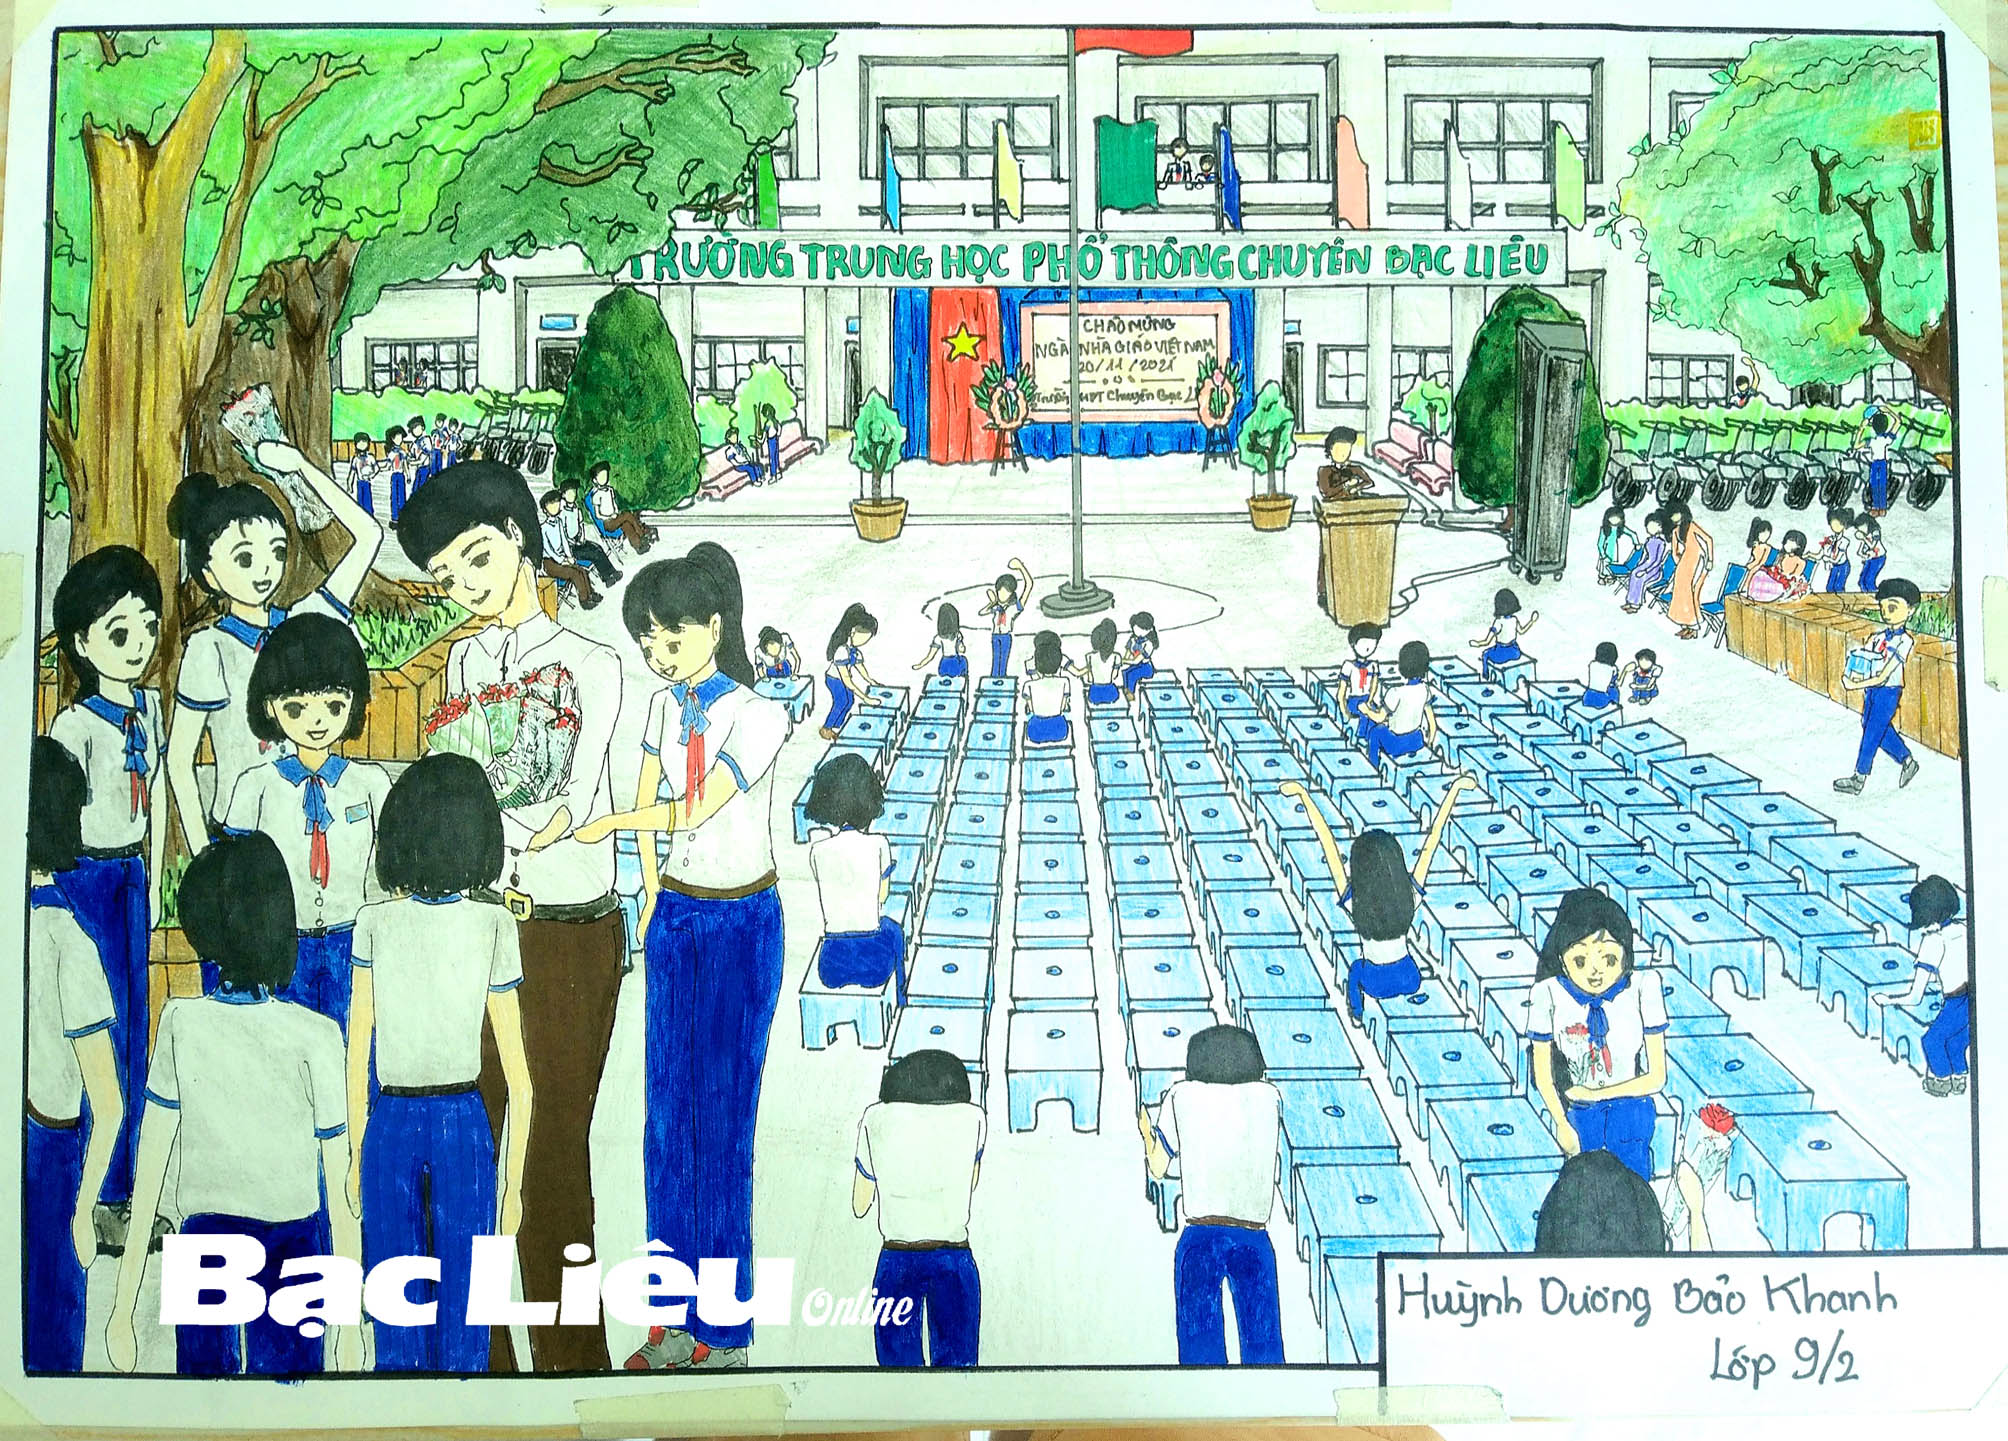 Để kỷ niệm ngày Nhà giáo Việt Nam, chúng ta cùng tham gia các hoạt động ý nghĩa, tạo dựng tình đoàn kết tình cảm giữa học sinh và thầy cô giáo. Tham gia các trò chơi, bày tỏ cảm ơn và tình cảm của mình đến với những người đã luôn bên cạnh học sinh, hướng dẫn và giúp đỡ chúng ta trong suốt quãng đường học tập.